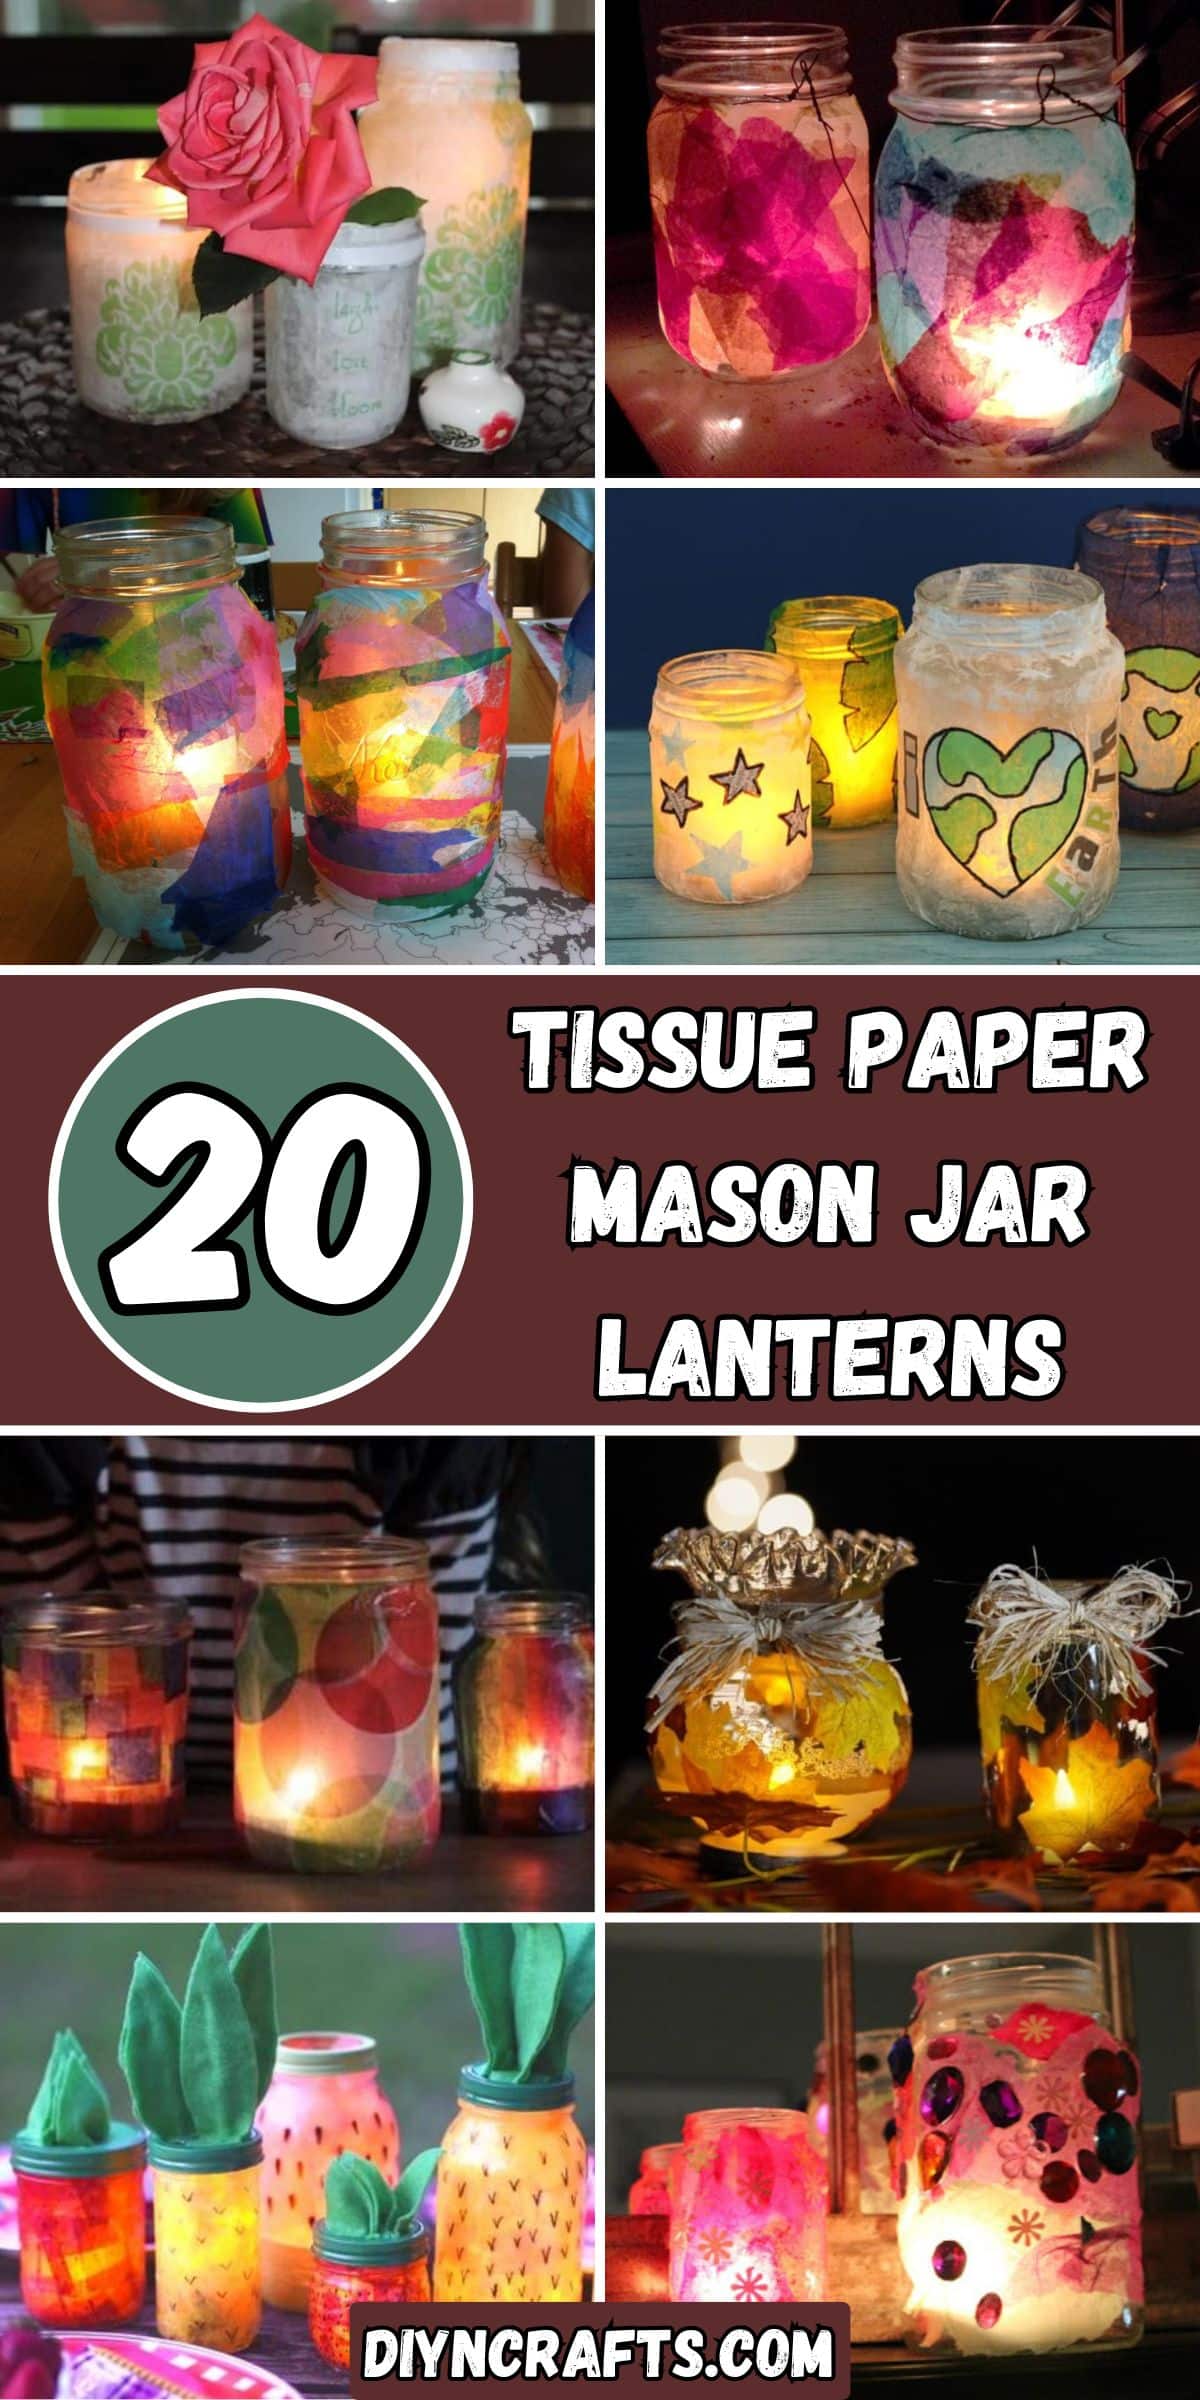 20 Tissue Paper Mason Jar Lanterns collage.